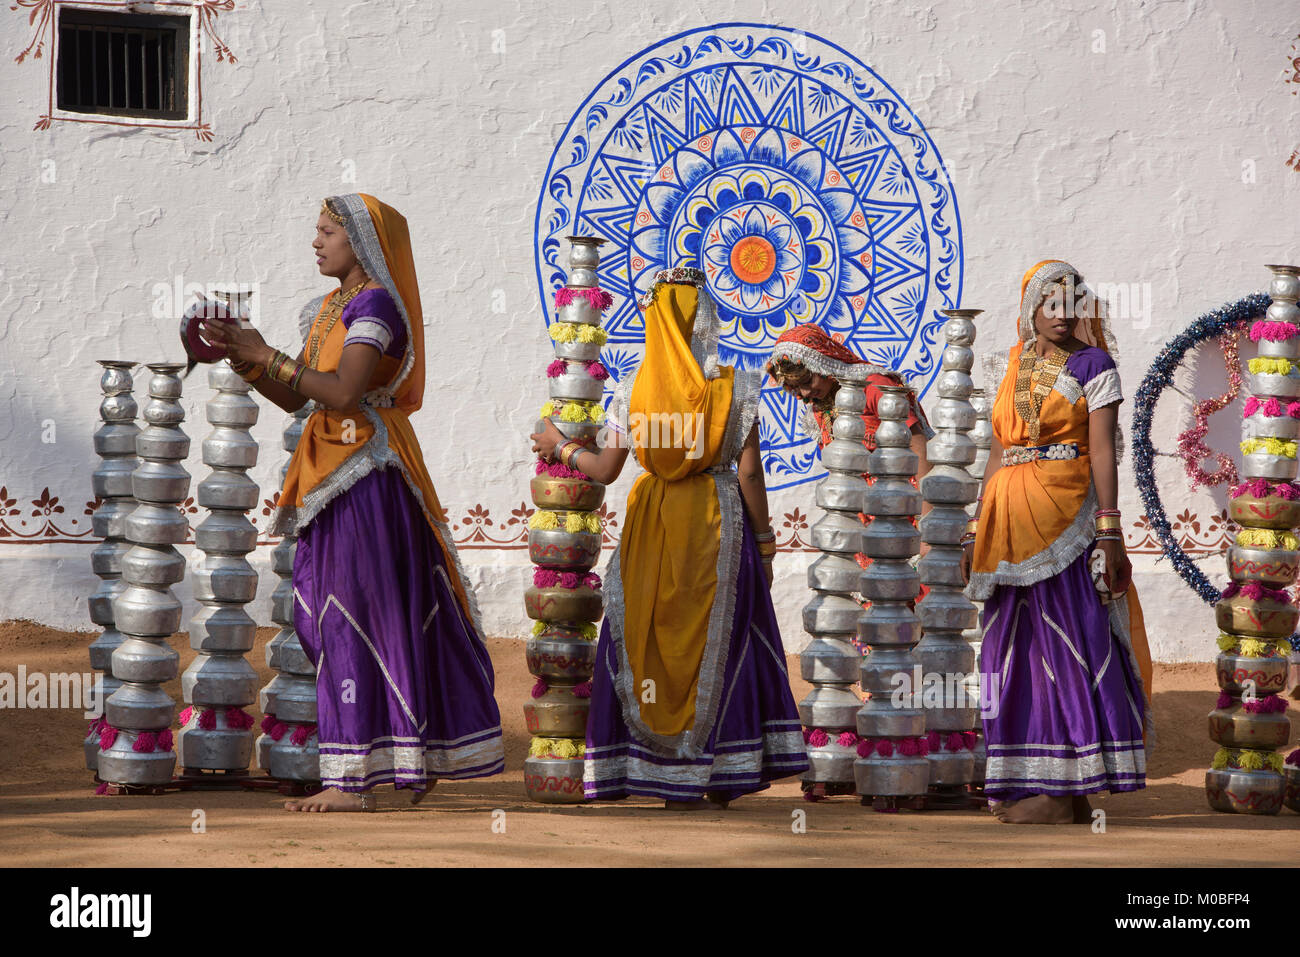 Preparare le donne ad eseguire la pentola Bhavai danza dal Rajasthan e Gujarat, celebrando la donna gli sforzi per portare acqua nel deserto, Udaipur, Rajasthan Foto Stock